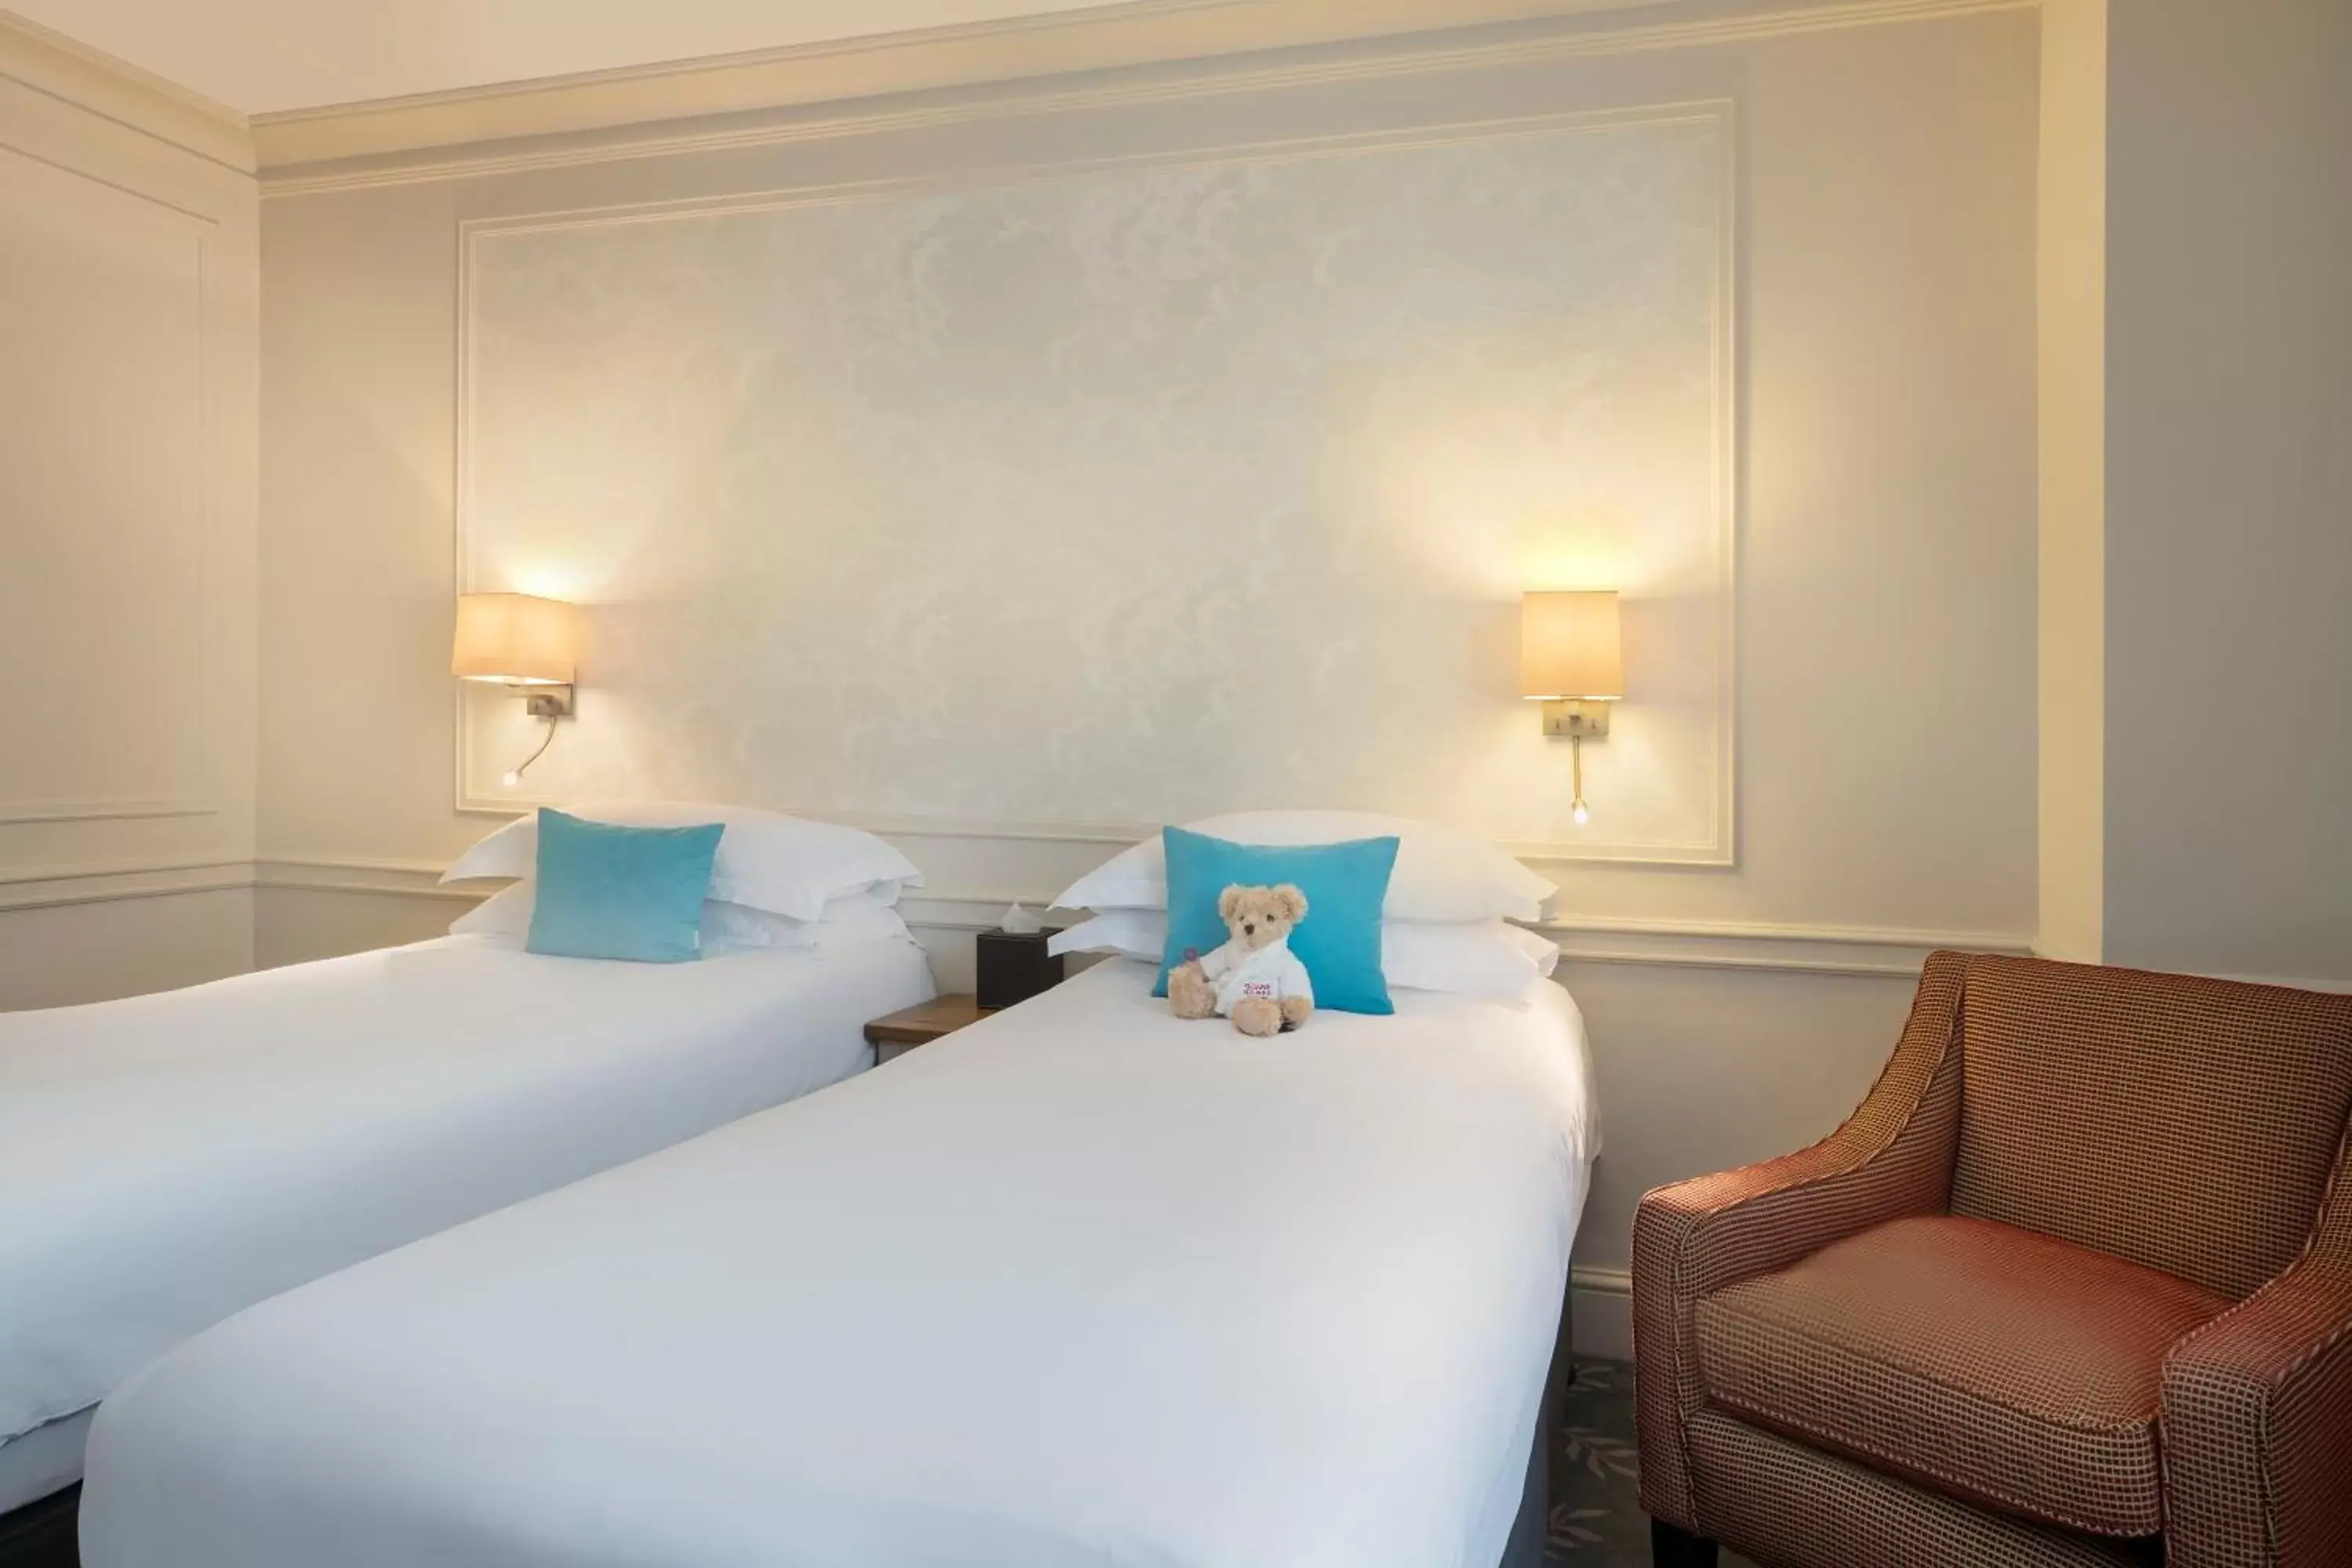 Bedroom, Bed in Sloane Square Hotel